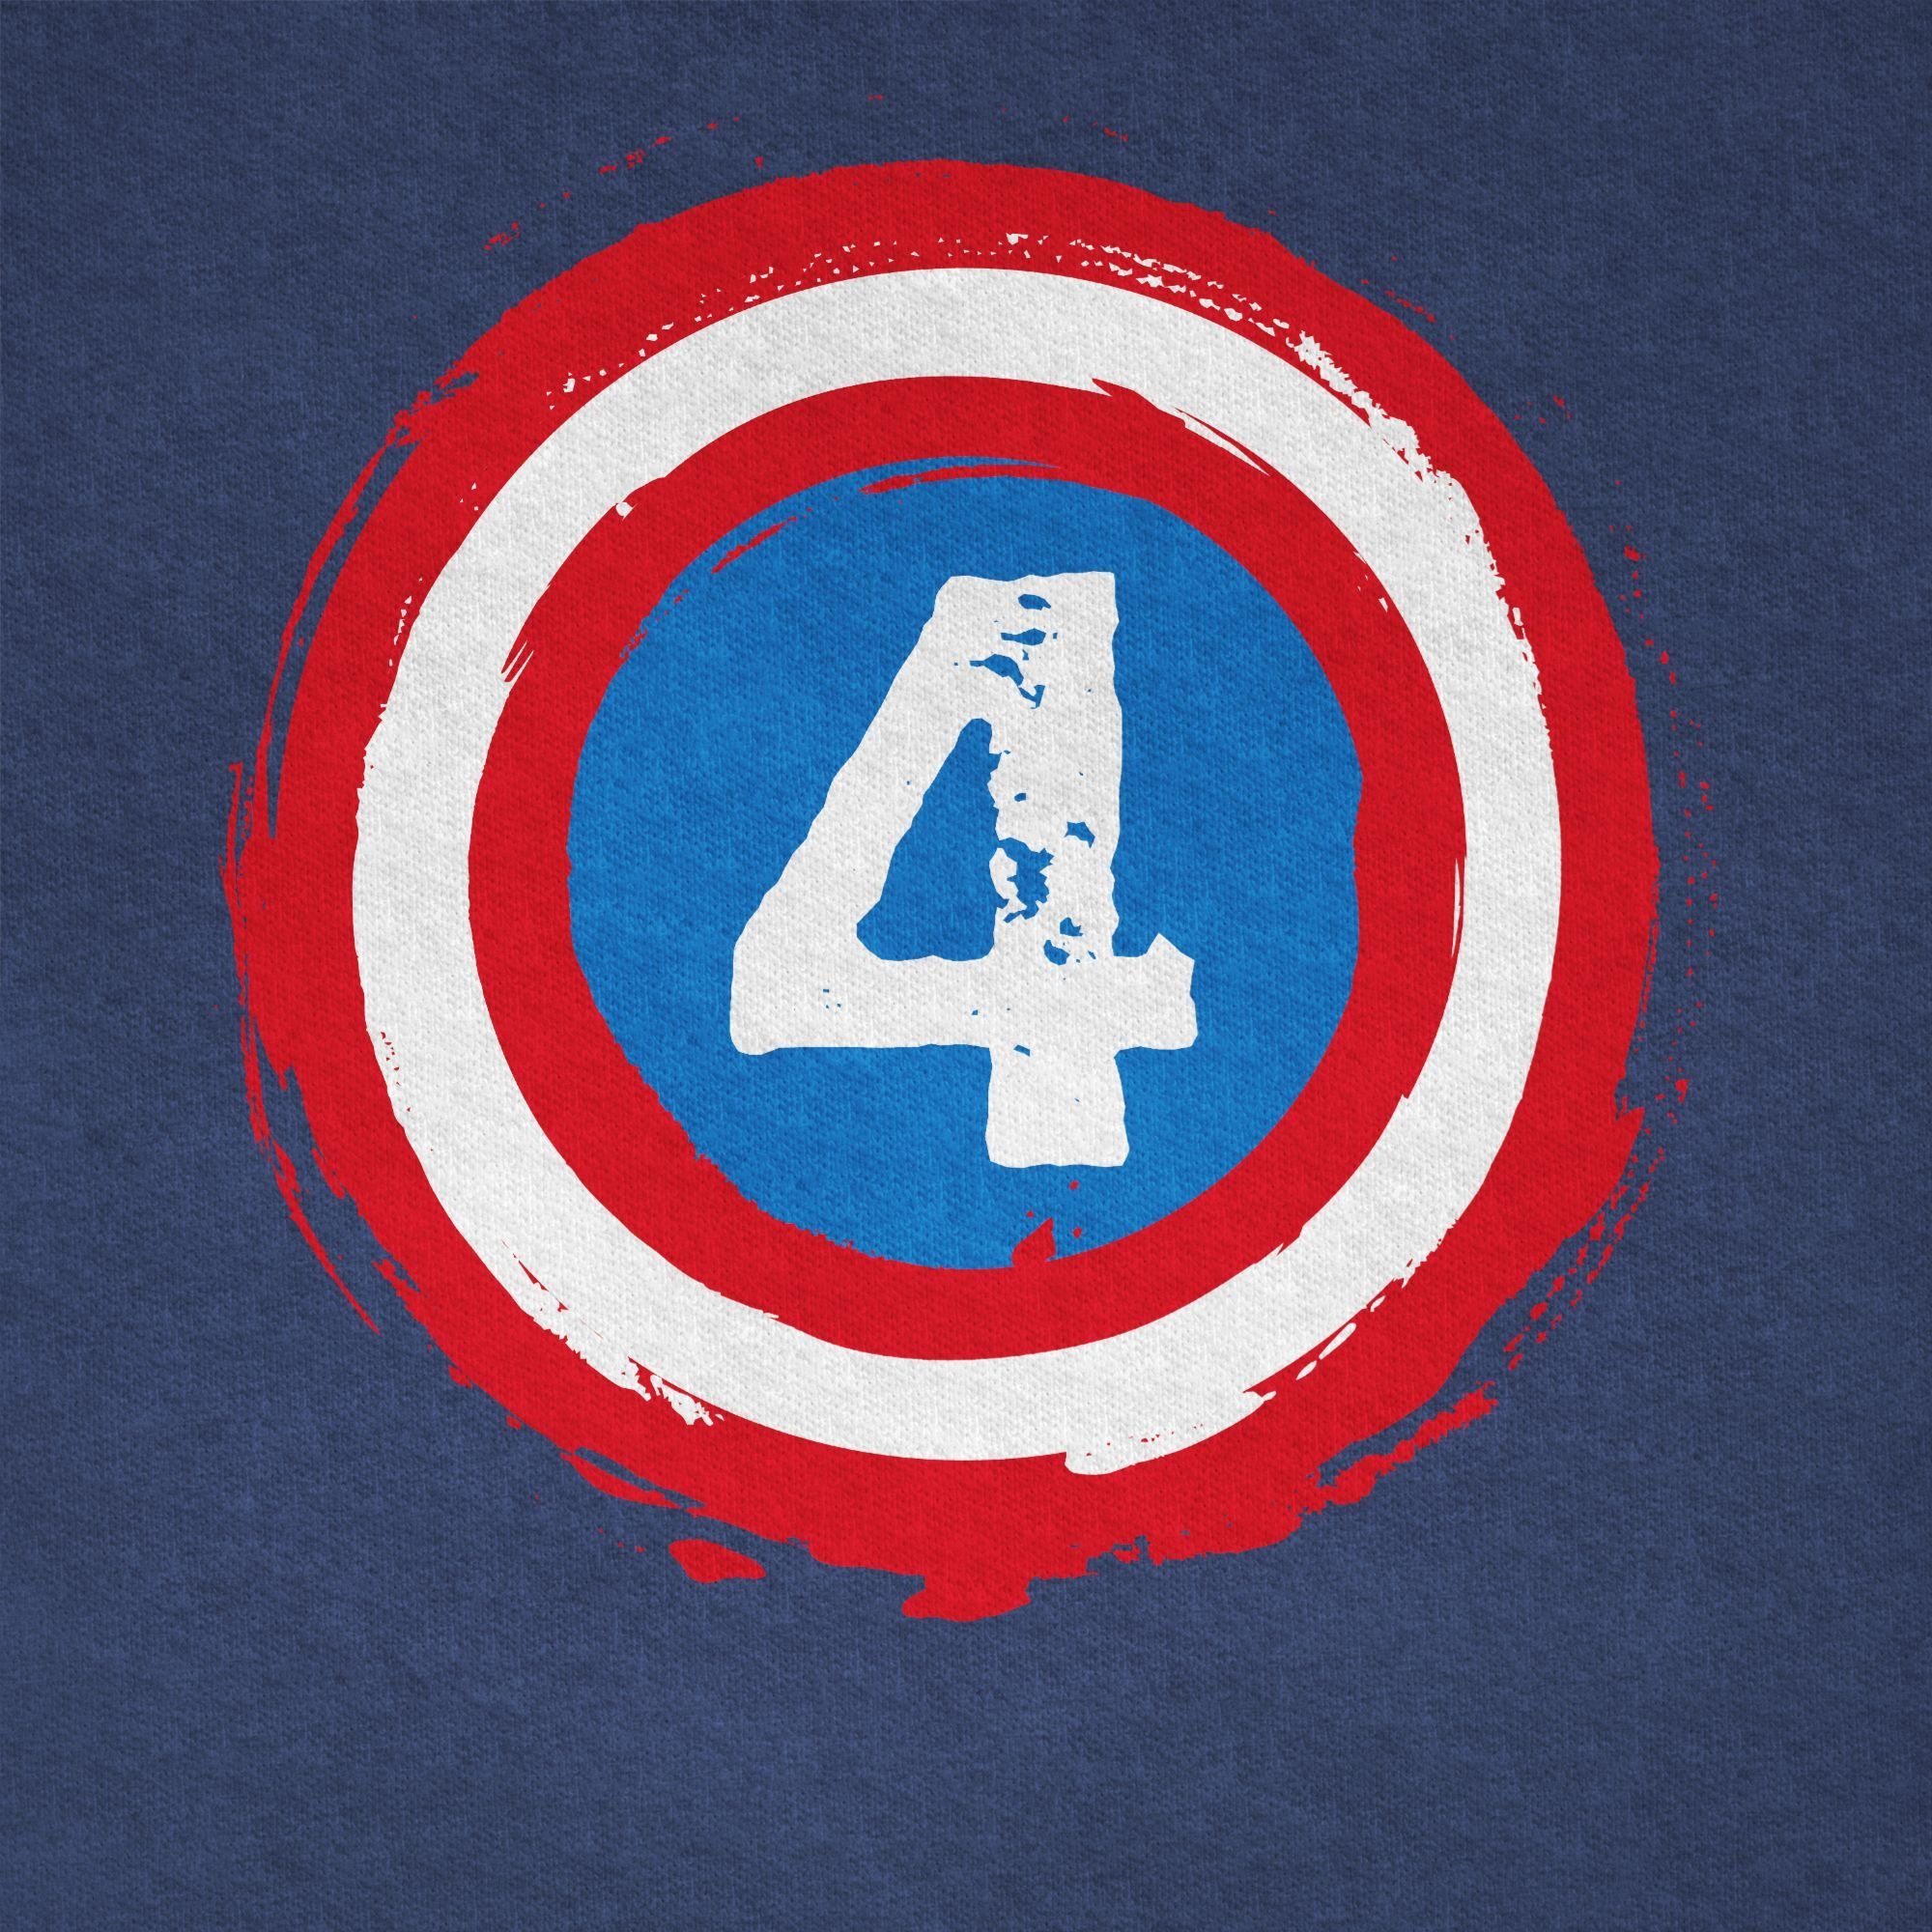 T-Shirt Meliert Shirtracer 3 Schild Vier 4. Dunkelblau Geburtstag Superhelden